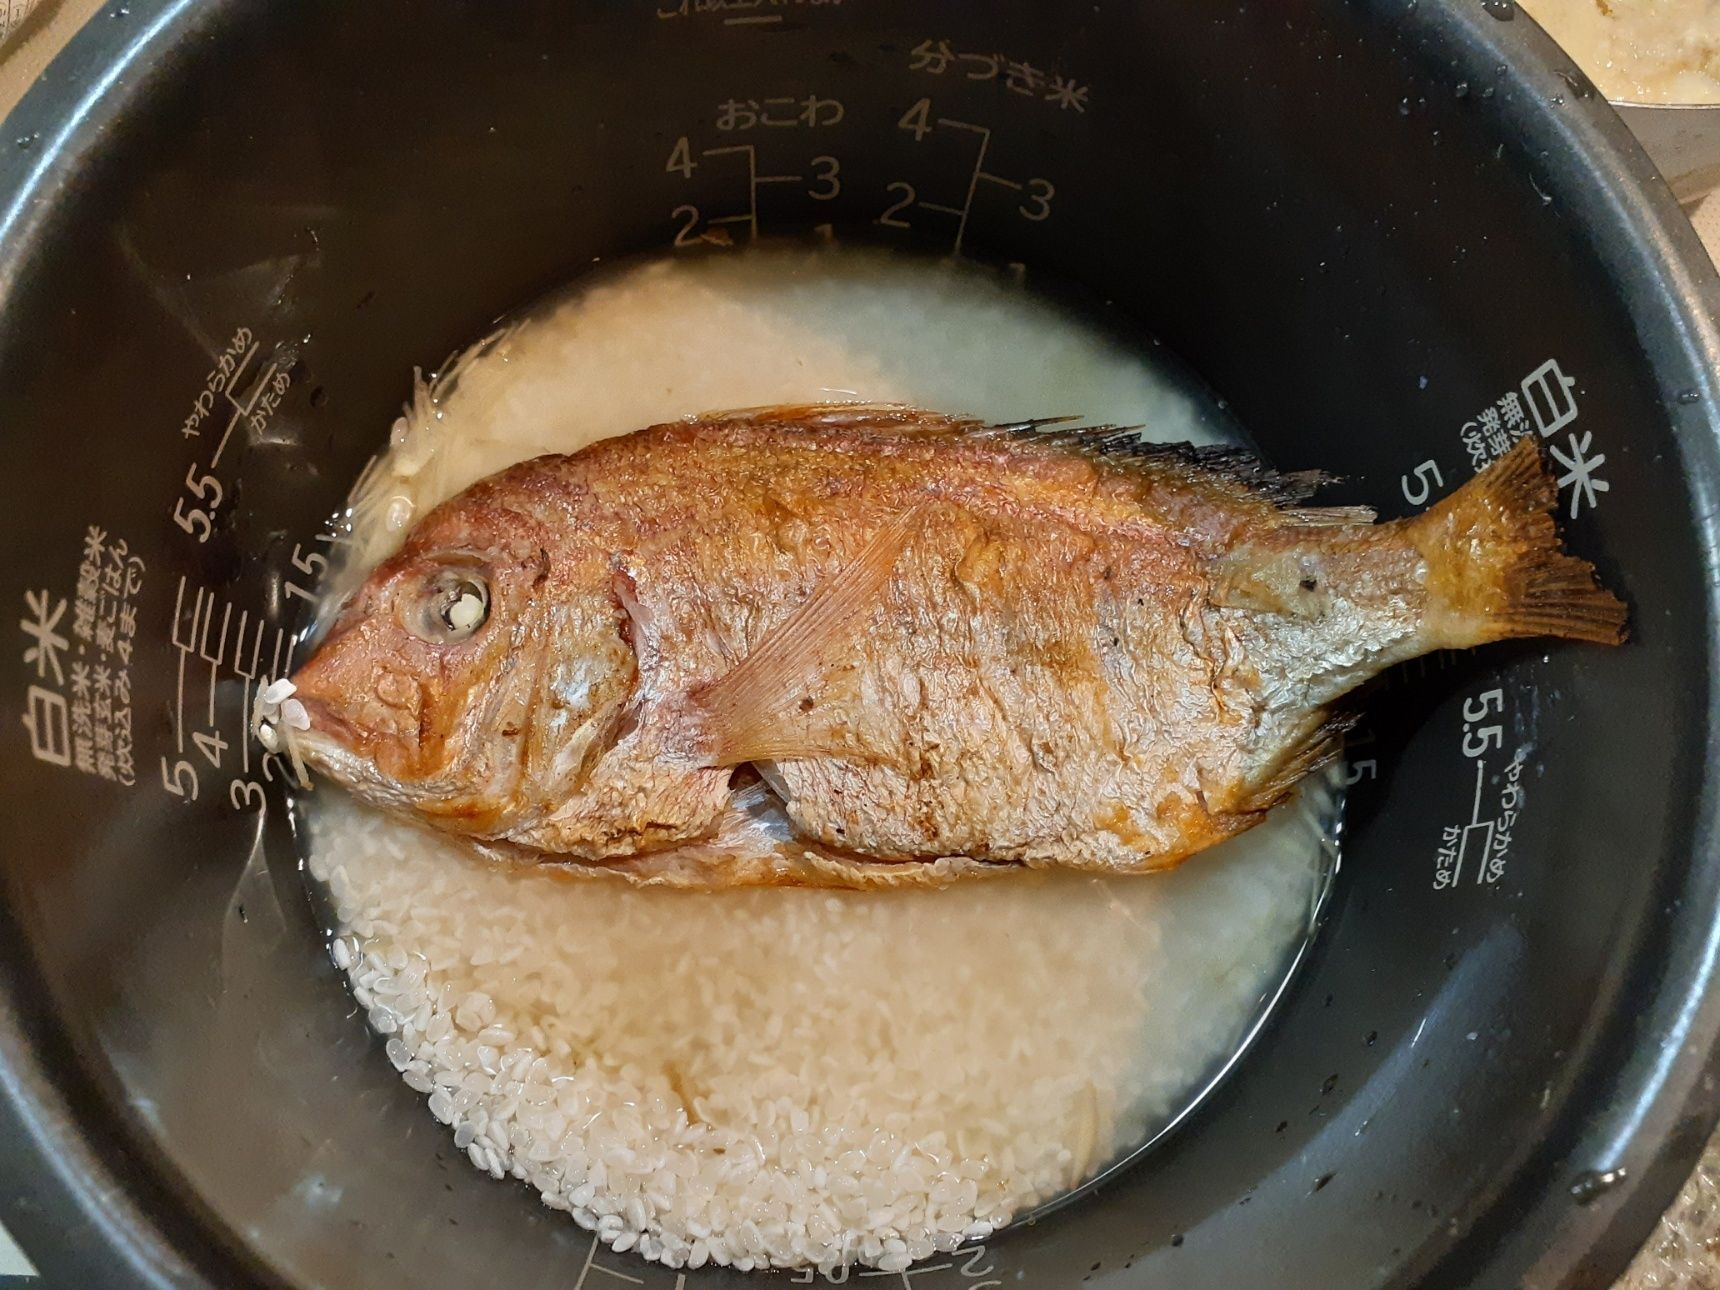 2、お米を研ぎ、炊飯器釜に入れ、2カップメモリより少し少なめの水を注ぐ→材料★を加えて混ぜる→焼いた鯛をのせて炊く